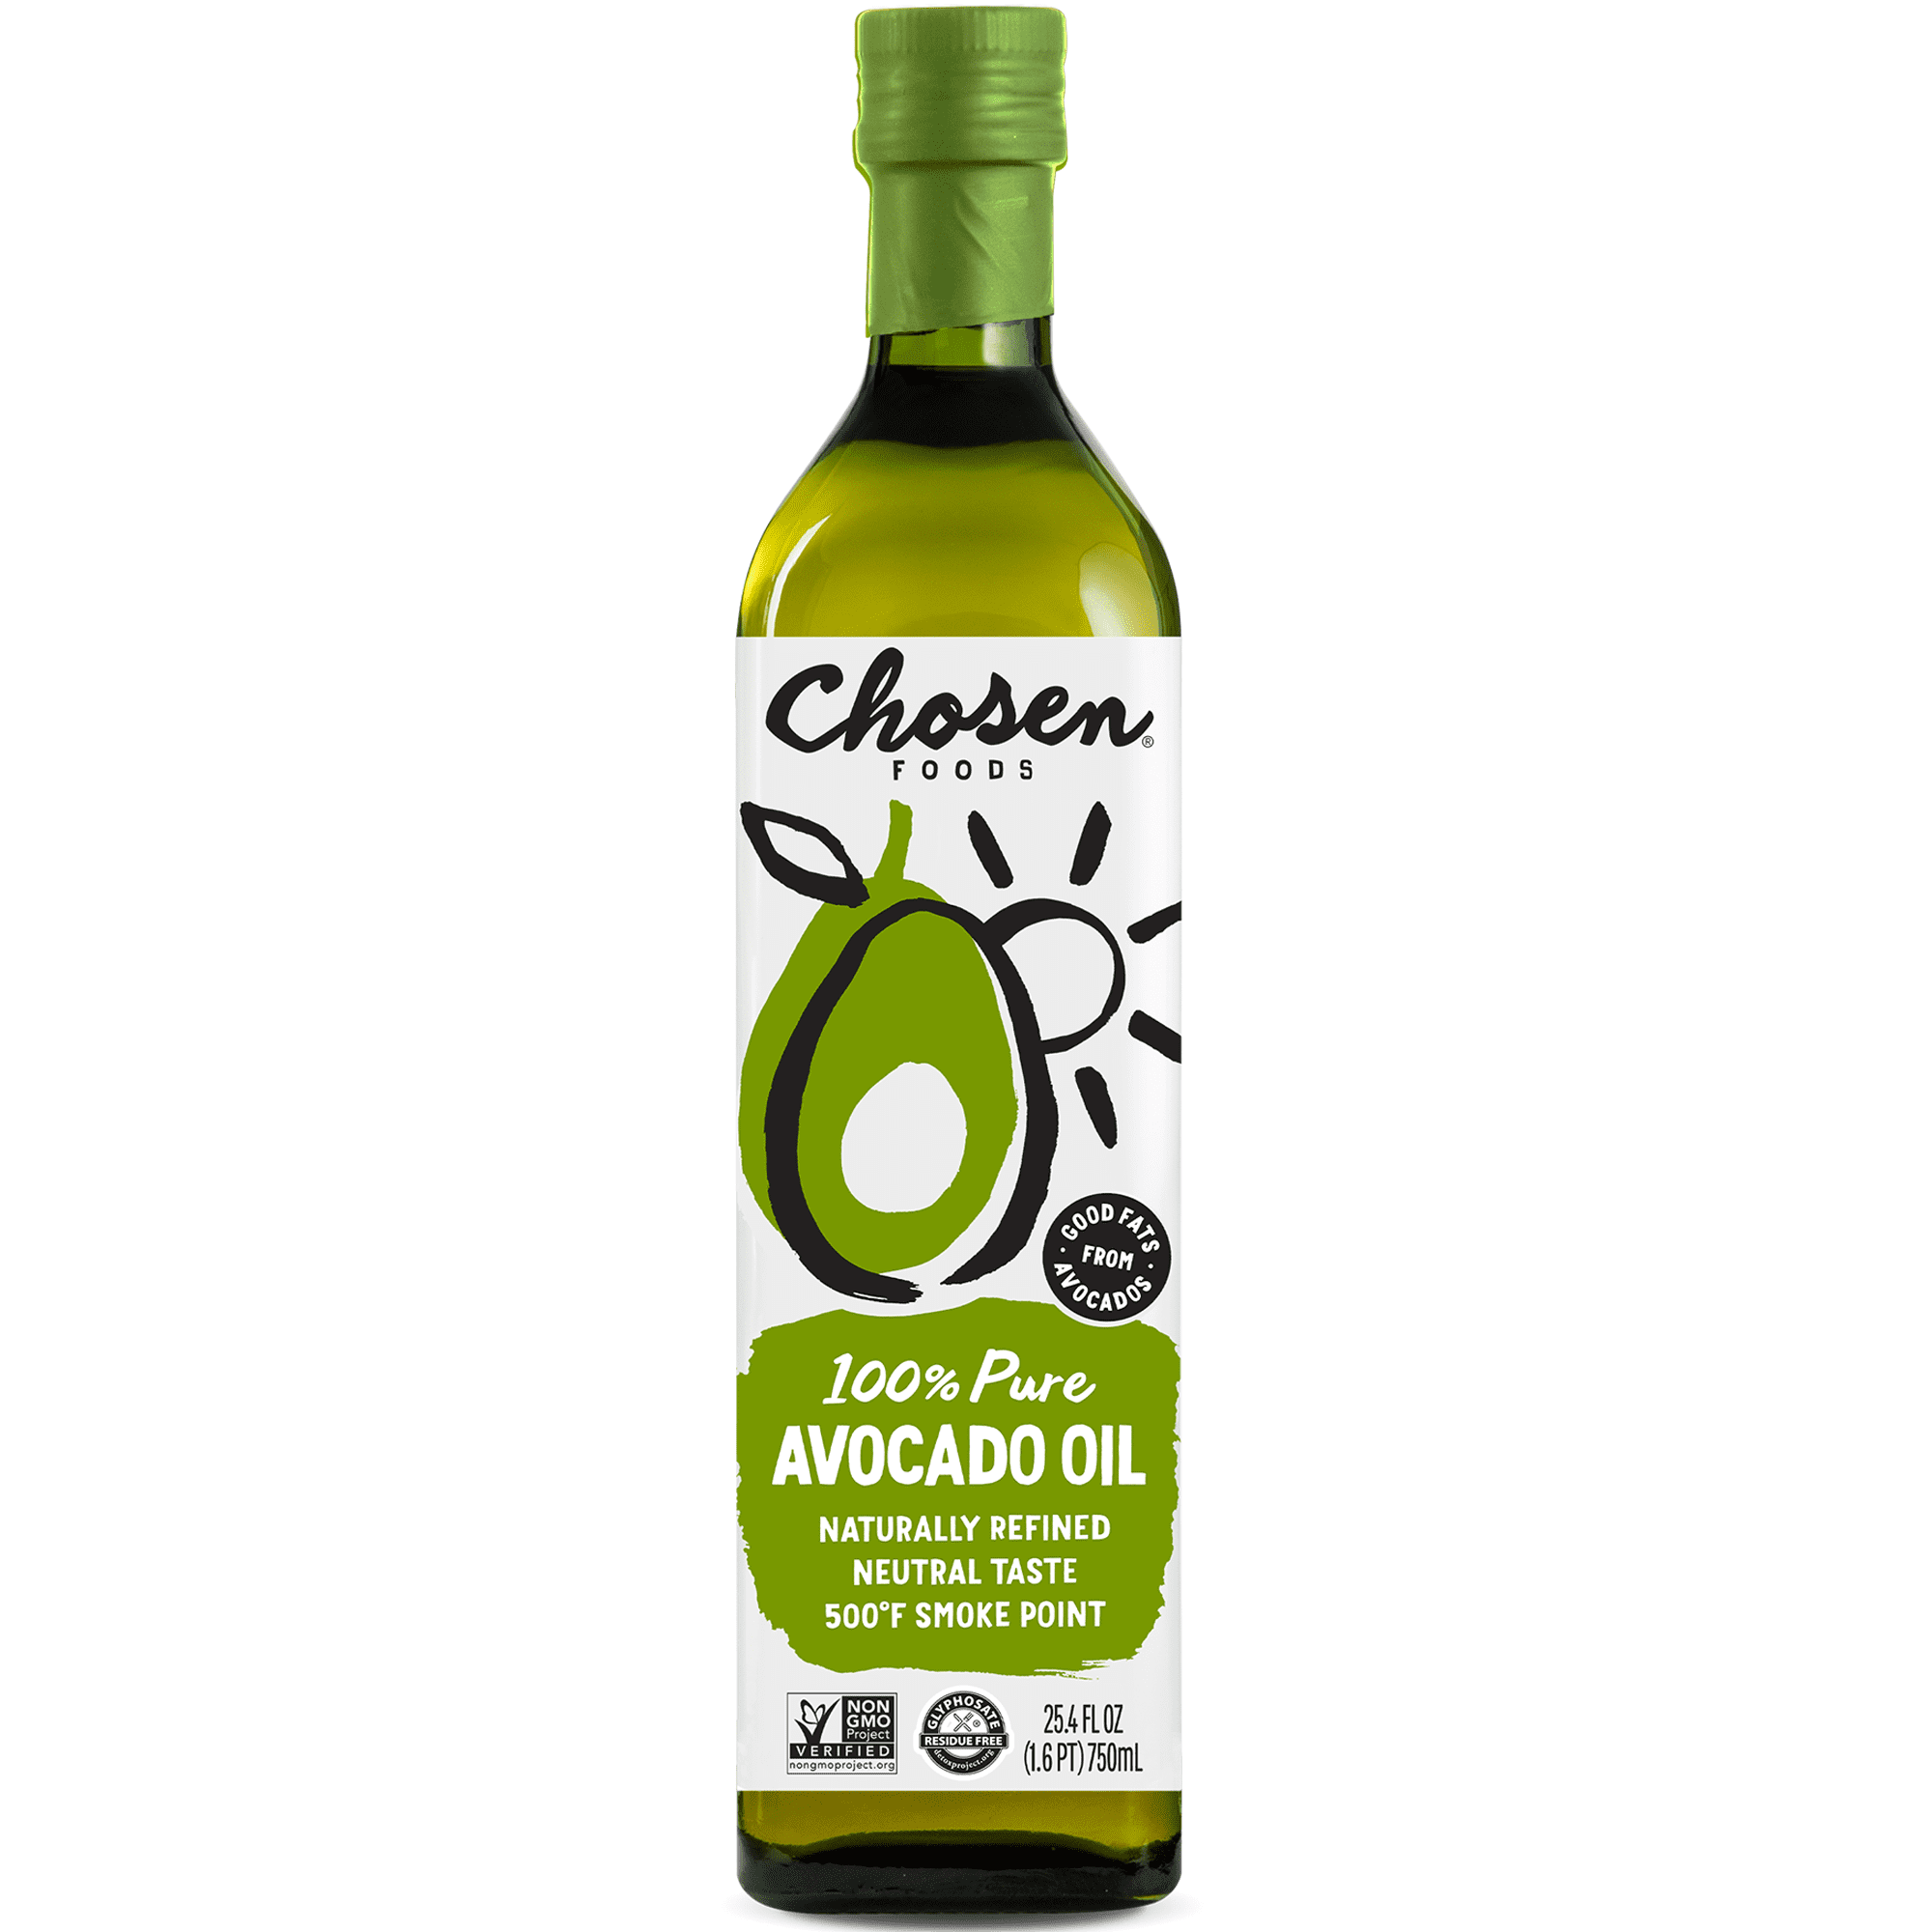 Chosen Foods Avocado Oil 750 Ml Bottle